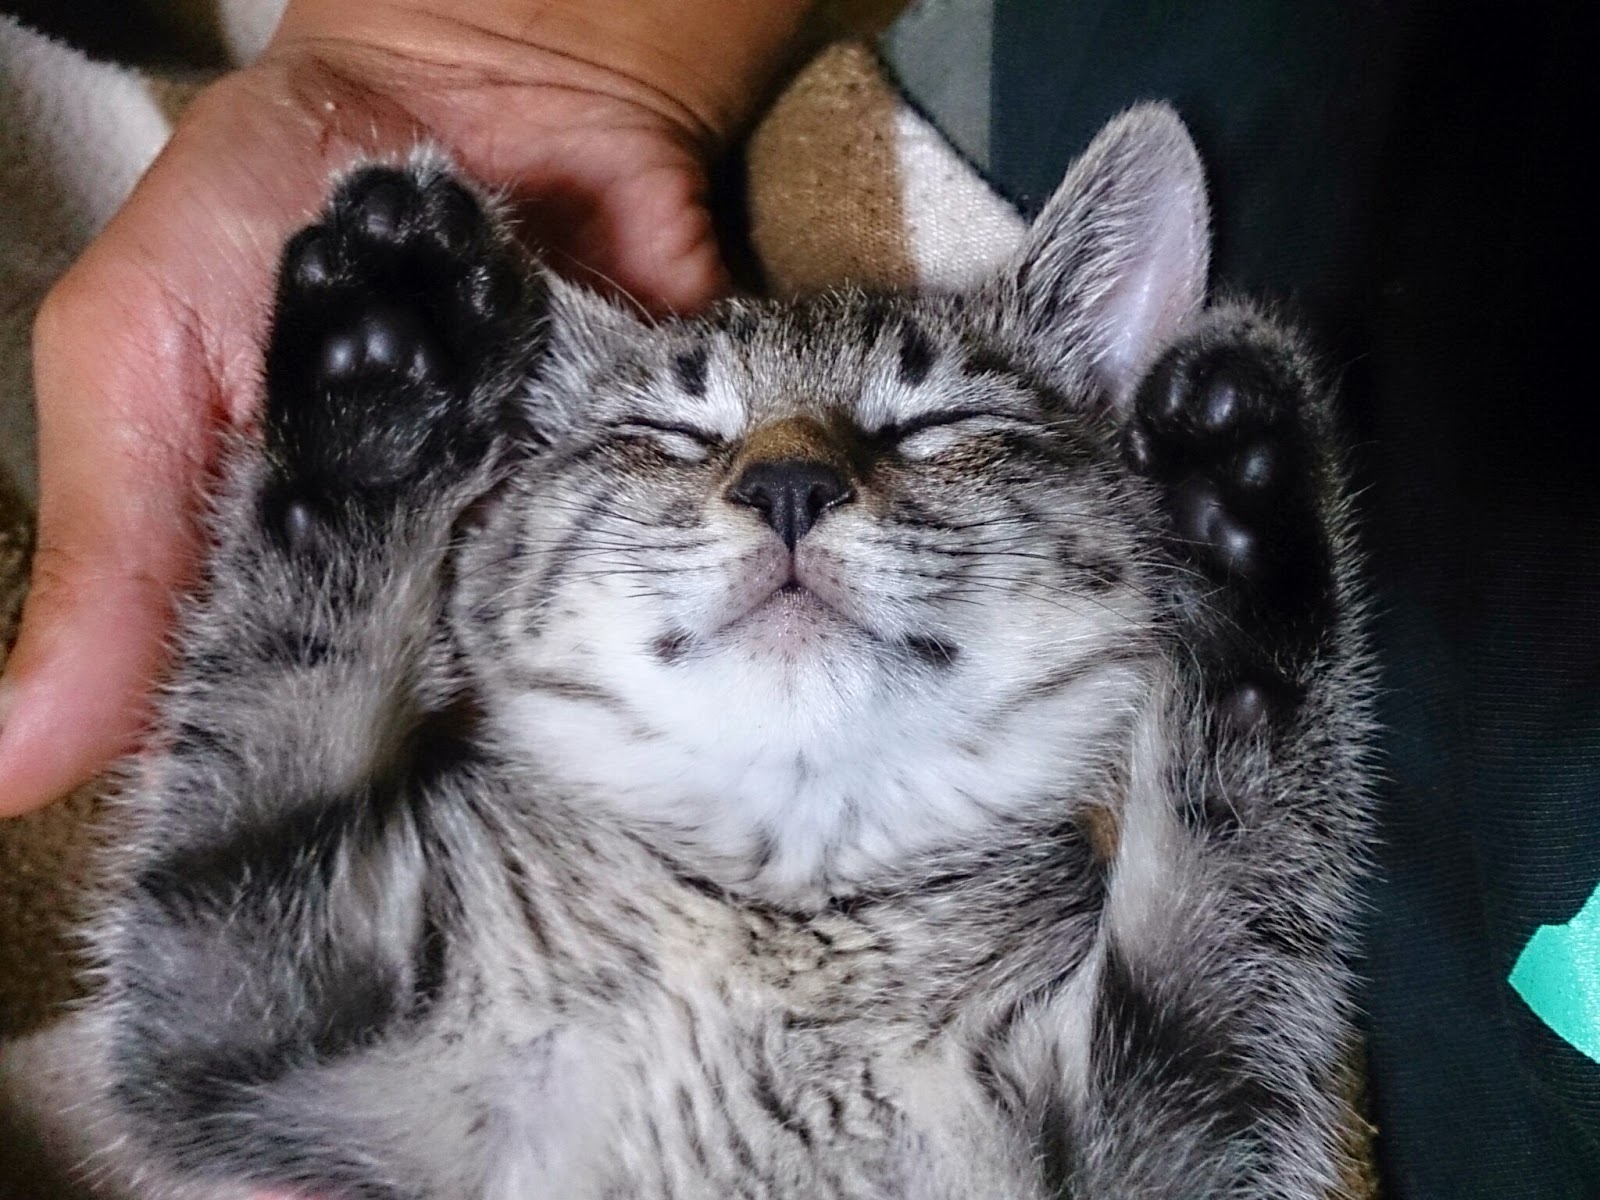 子猫の寝顔 - The sleeping face of the baby cat 